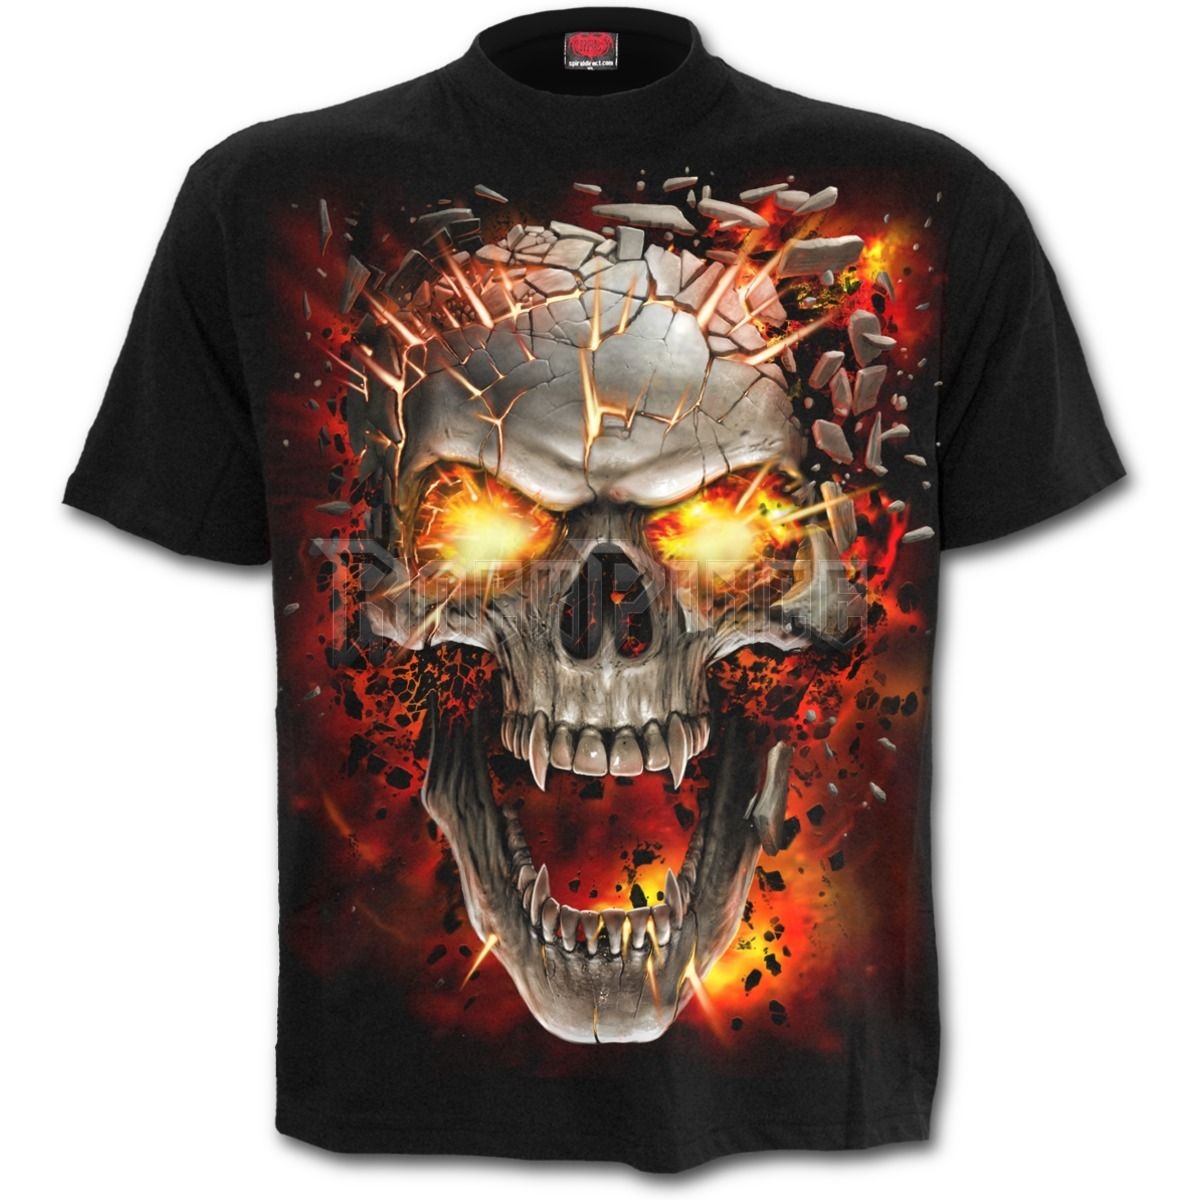 SKULL BLAST - T-Shirt Black - T152M101